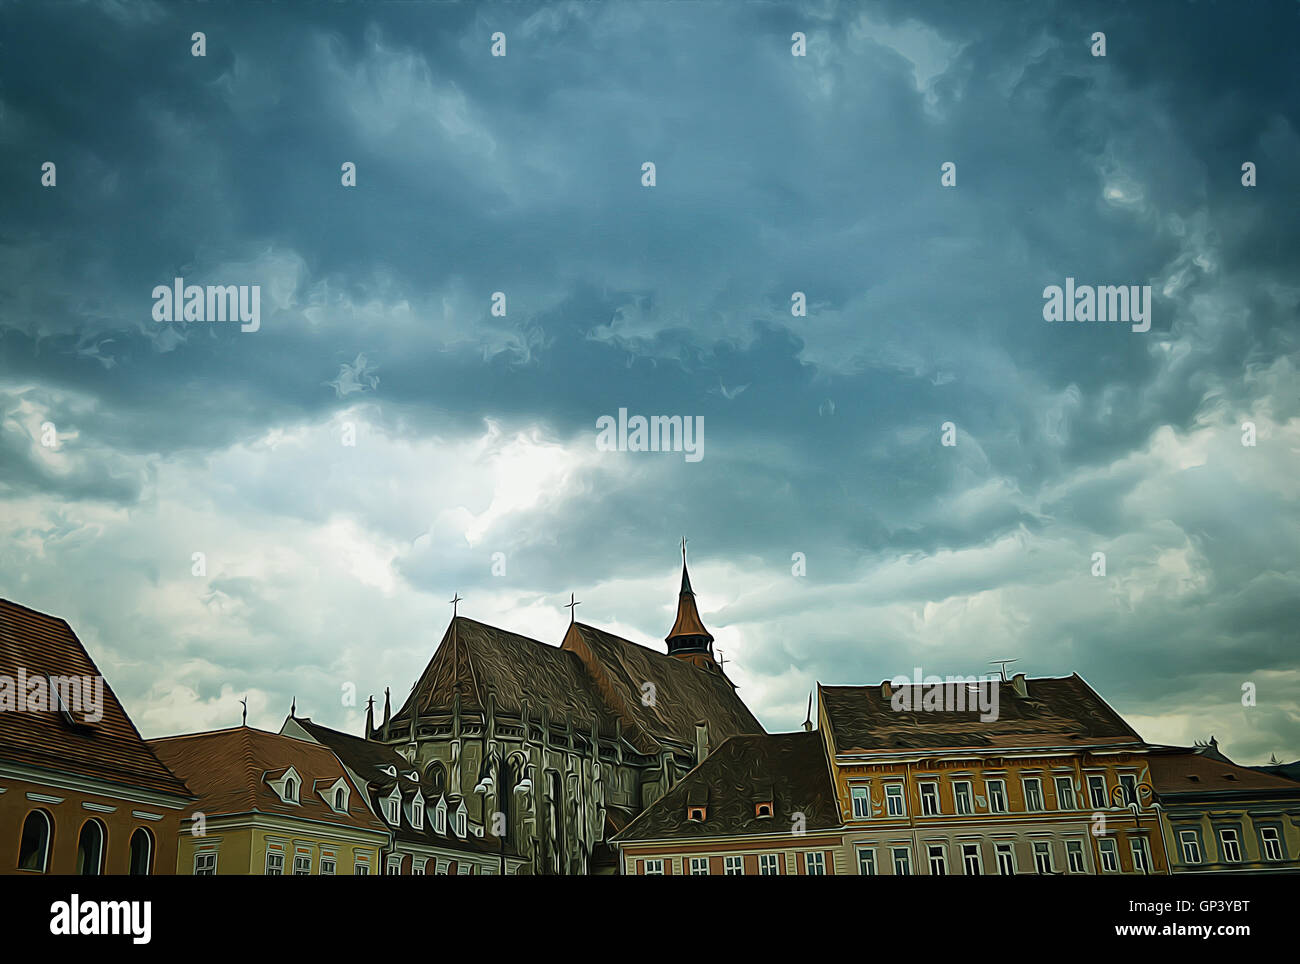 Immagine delle vecchie case medievali al di sopra di un cielo nuvoloso nel centro storico della città di Brasov. Foto Stock